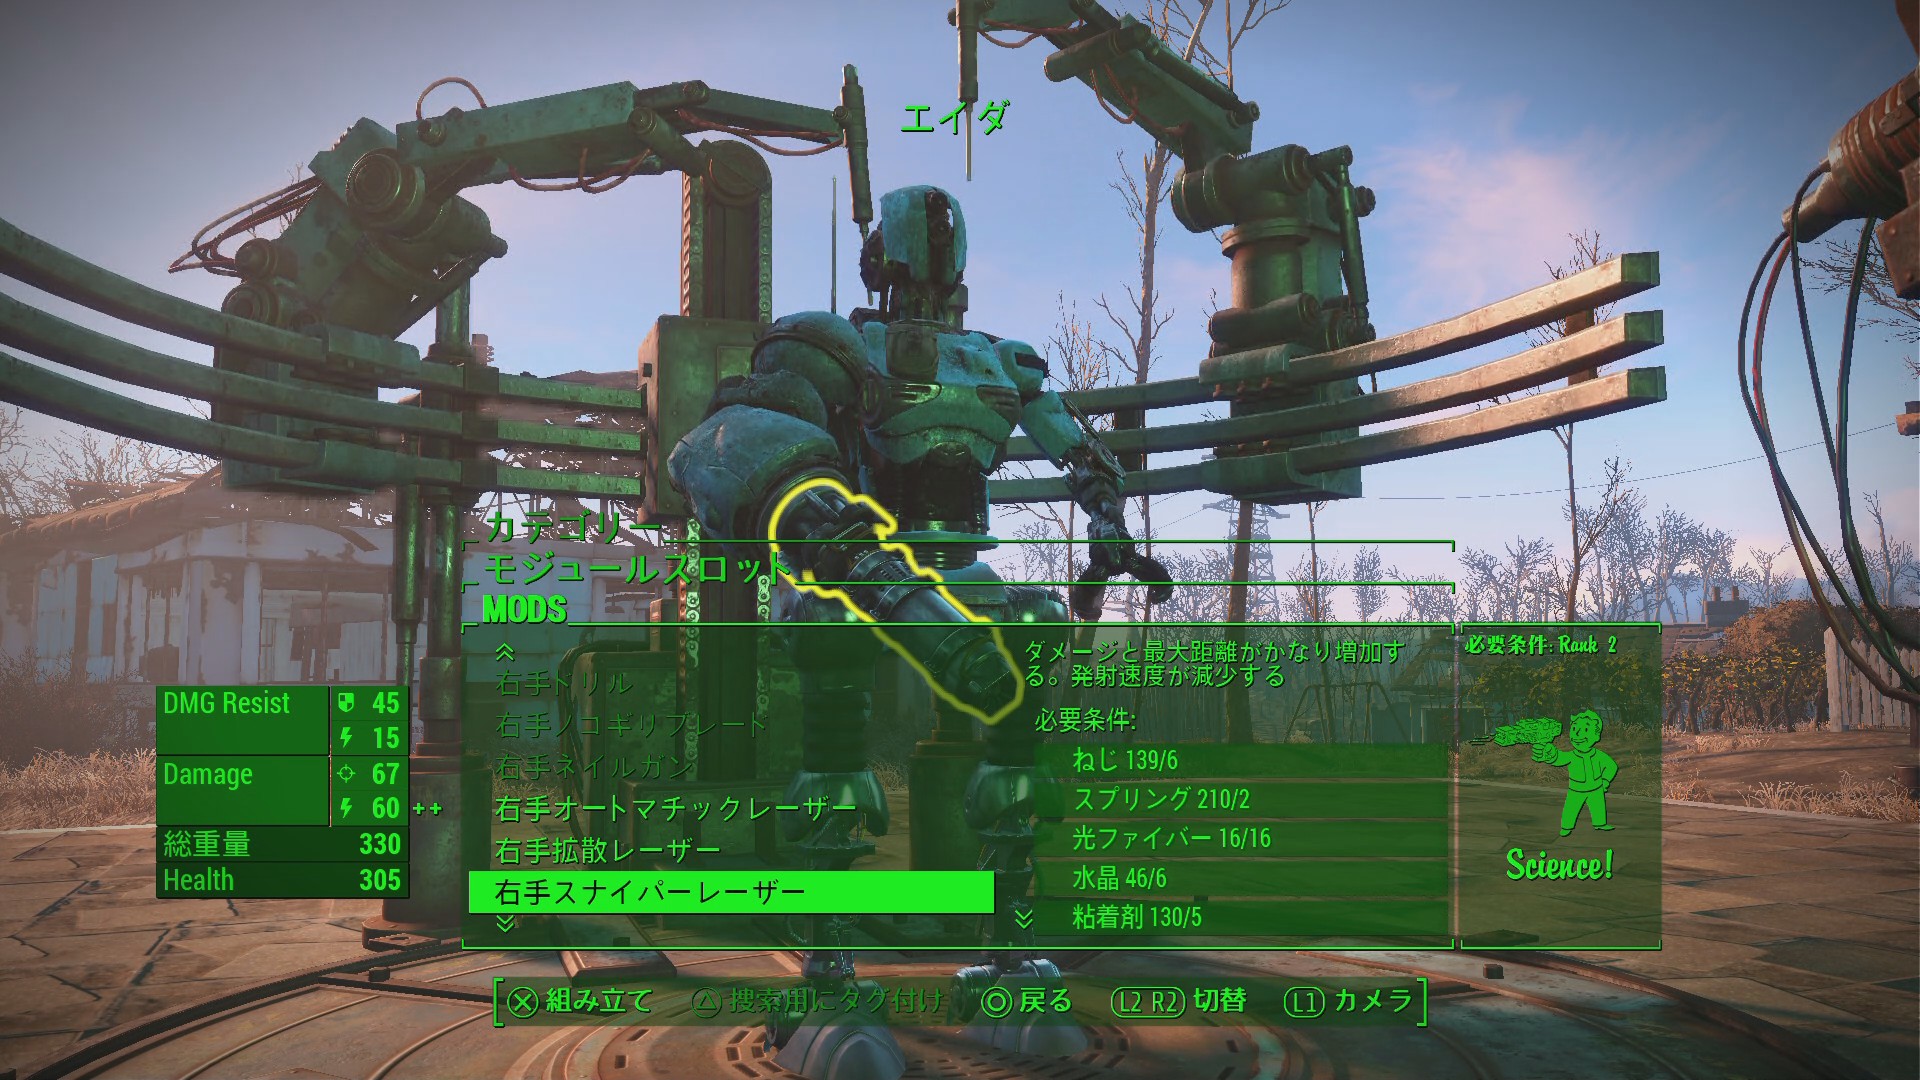 画像集no 008 Fallout 4 のdlc第1弾 Automatron をプレイ こだわりのロボットを自作して 連邦狭しと暴れまくろう